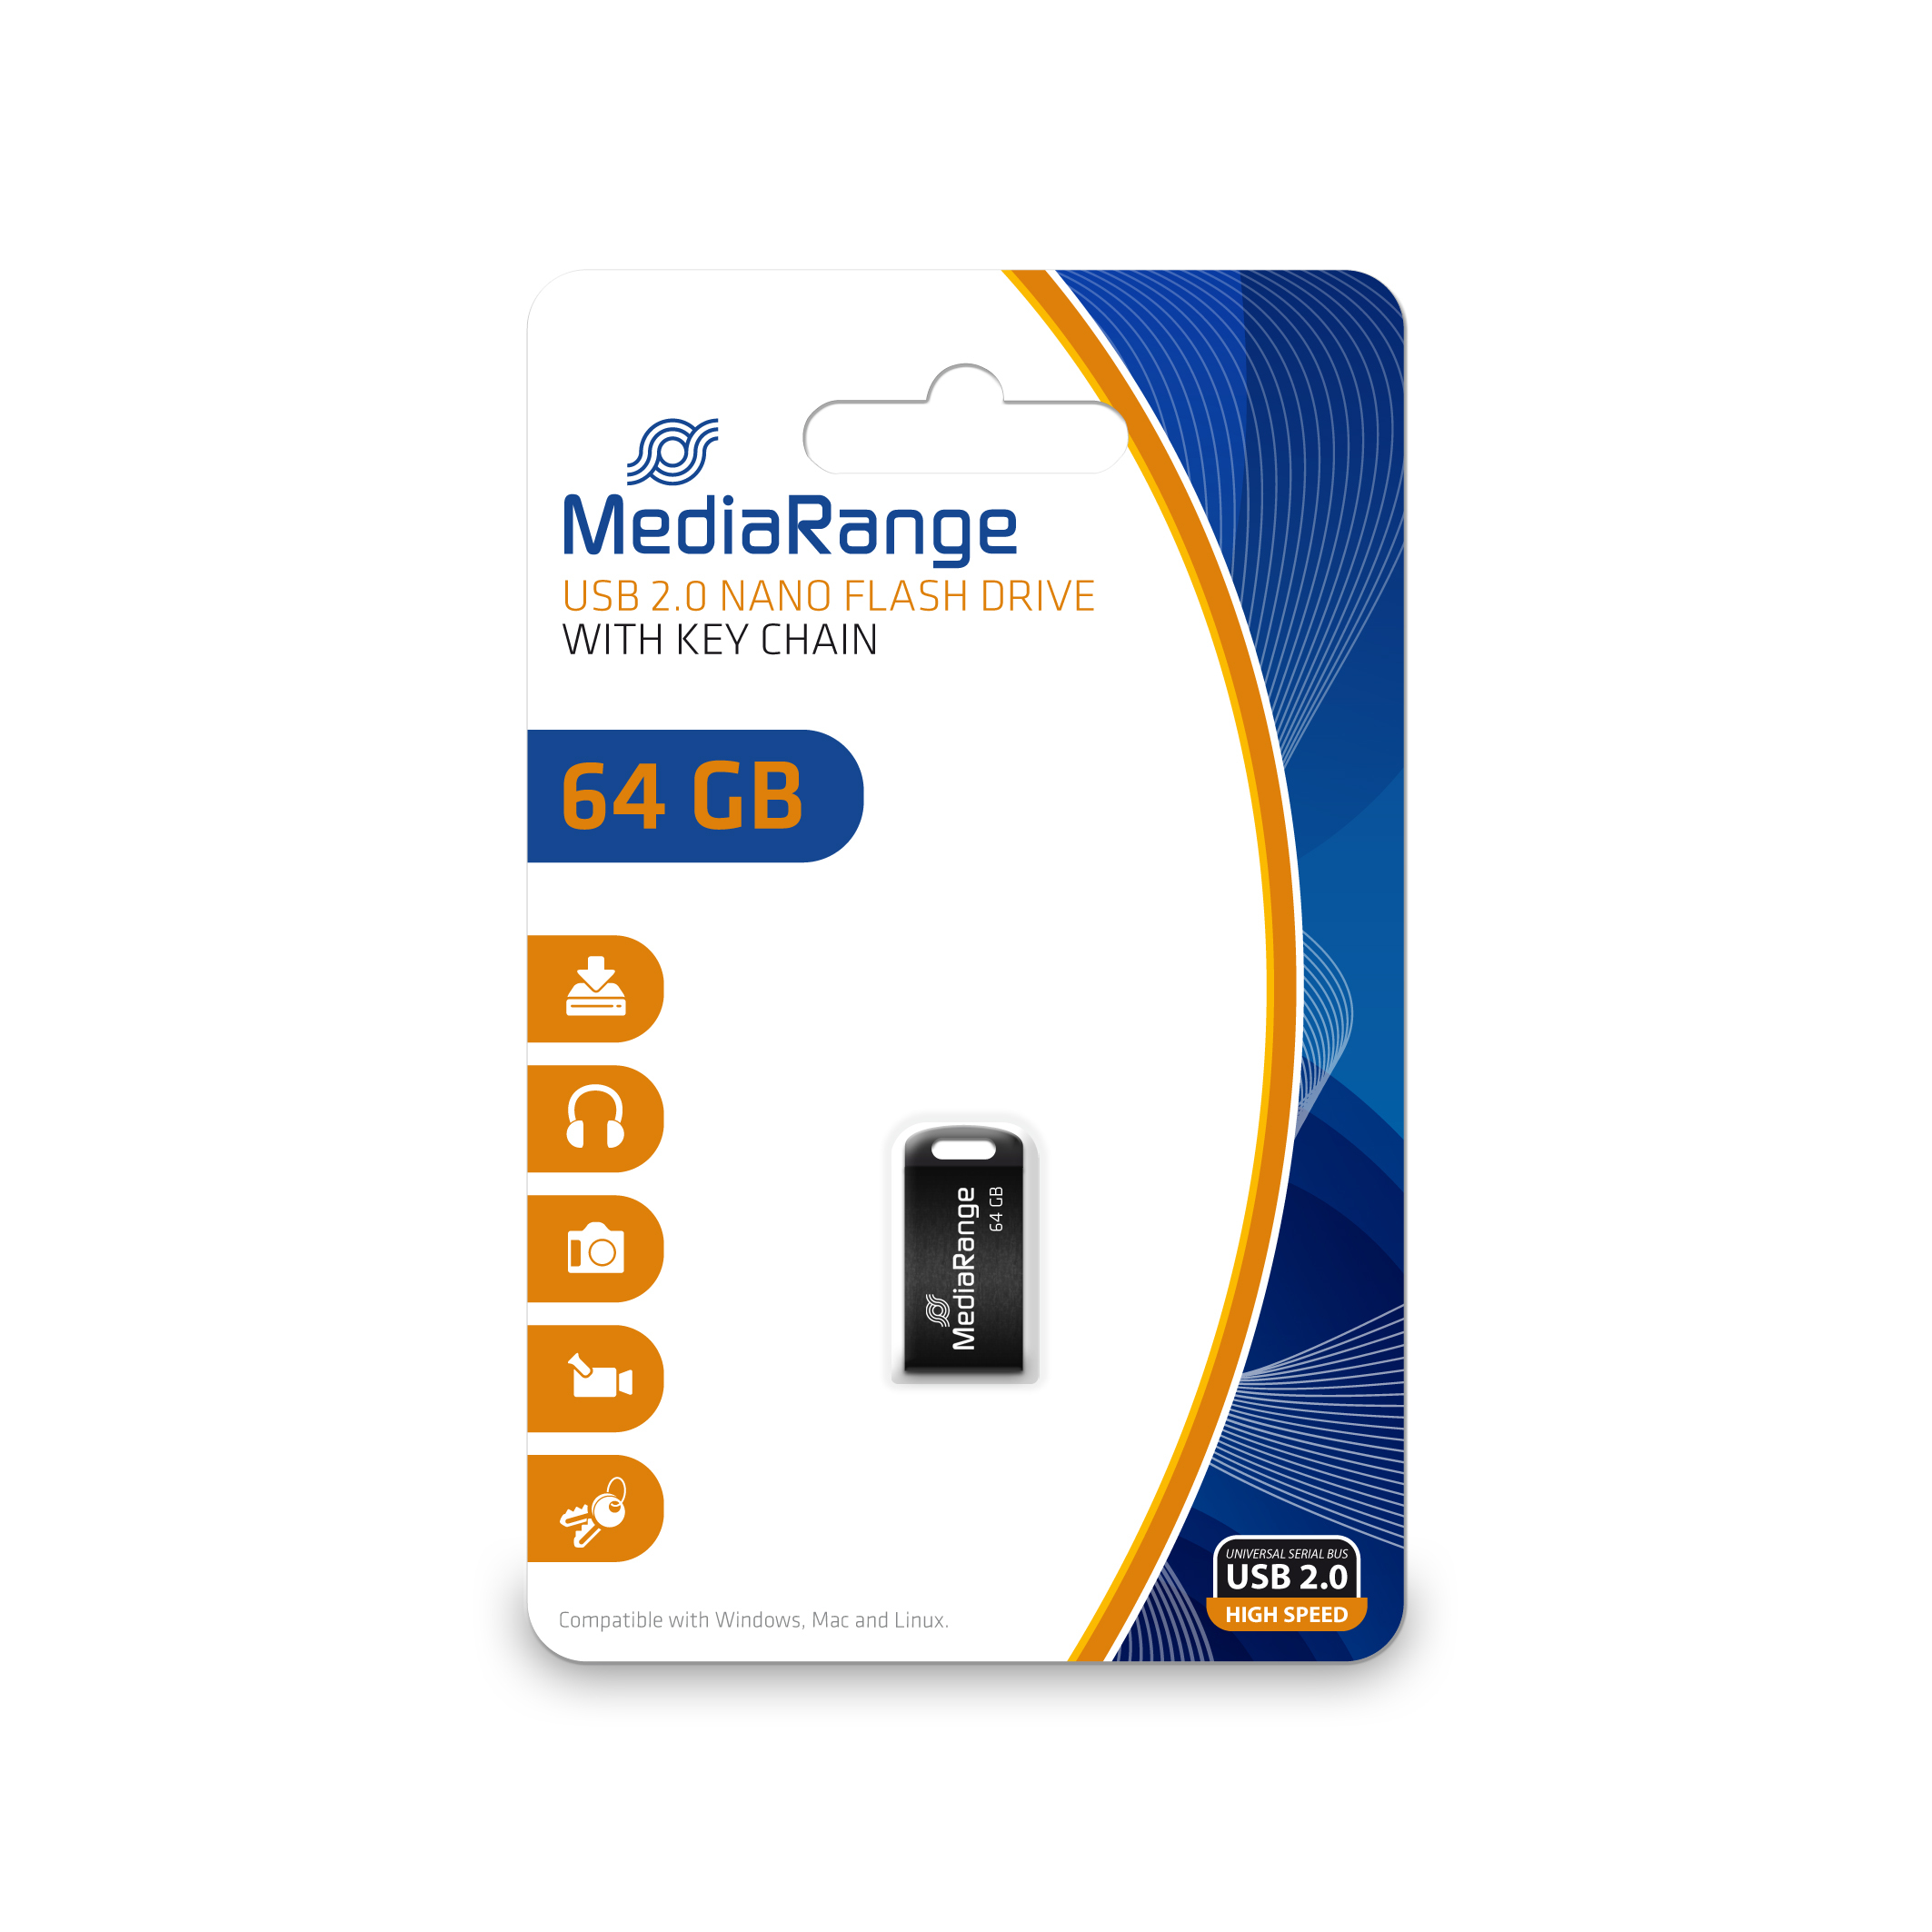 MediaRange MR923 64 GB